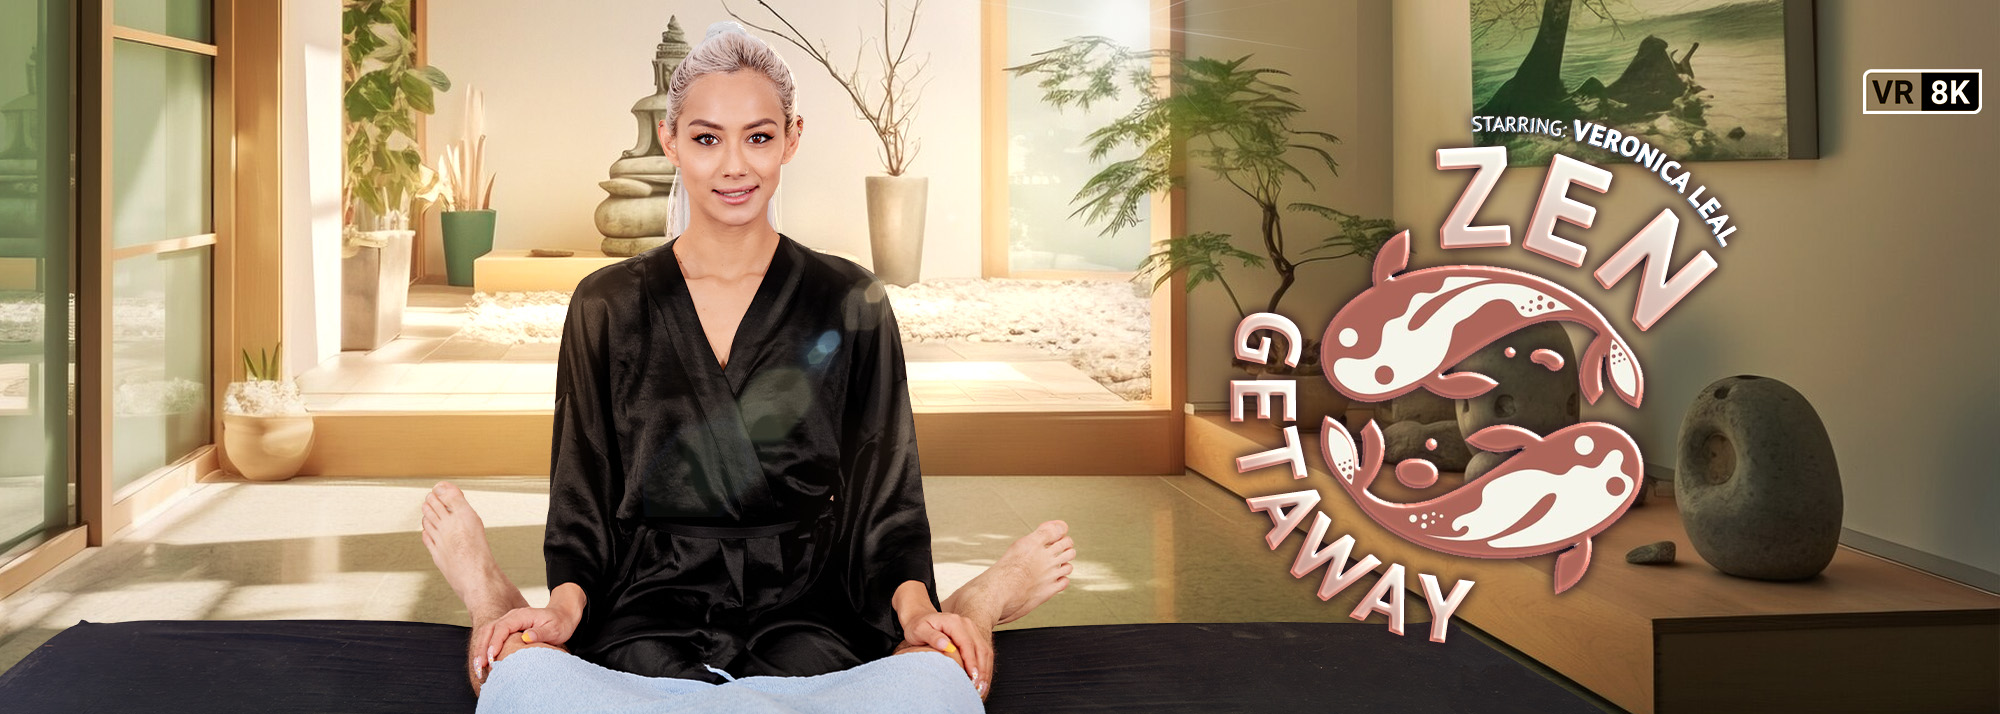 Zen Getaway - VR Porn Video, Starring: Veronica Leal